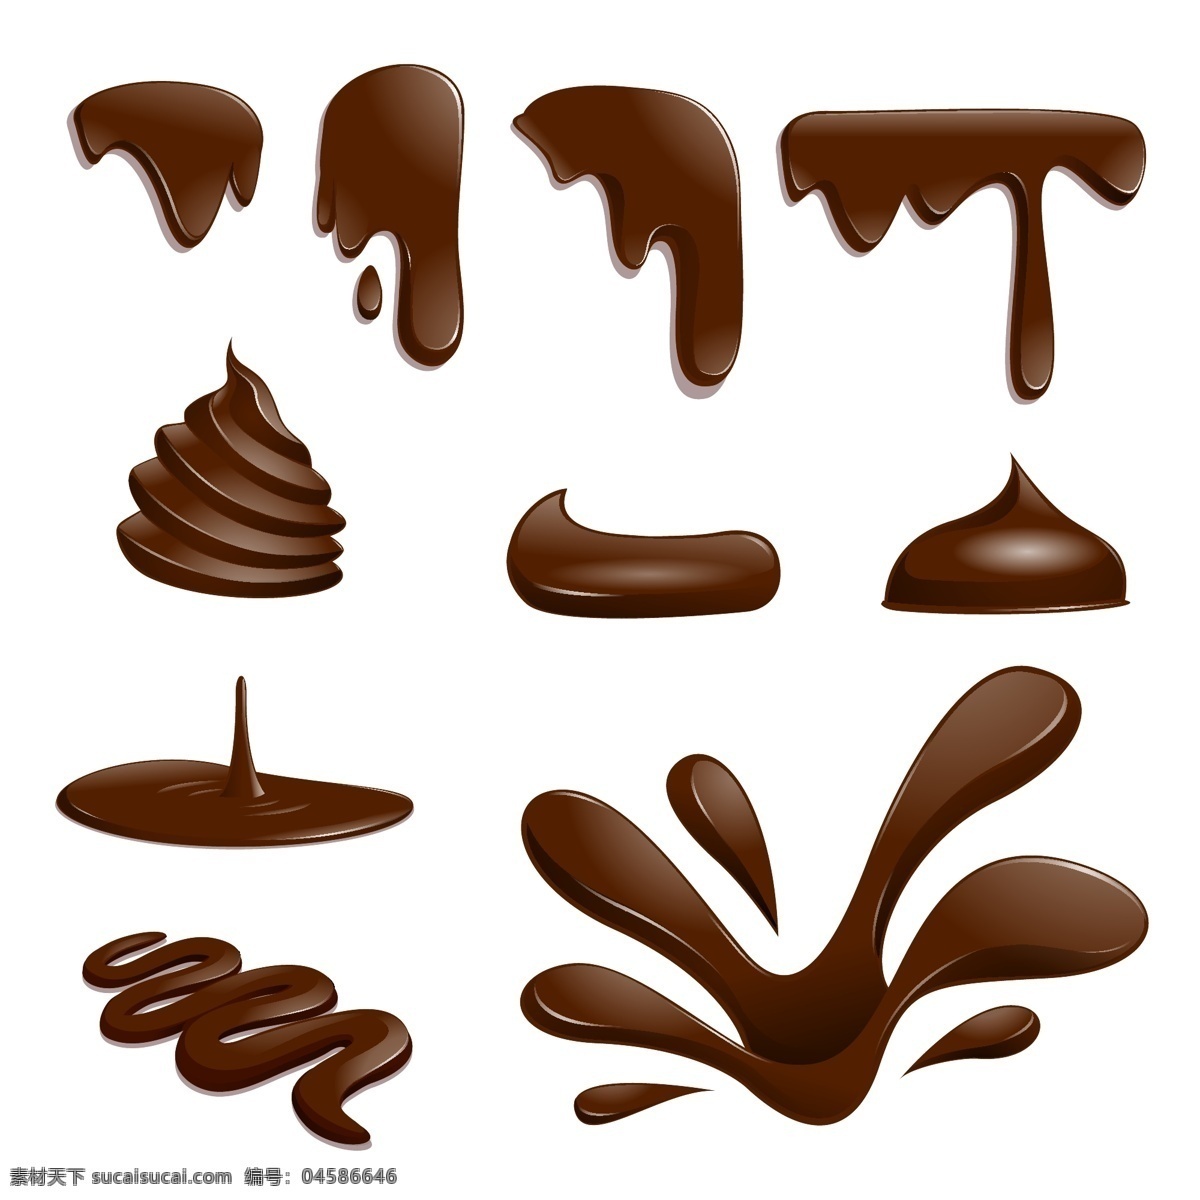 巧克力 雪糕 溶解 食物 液体